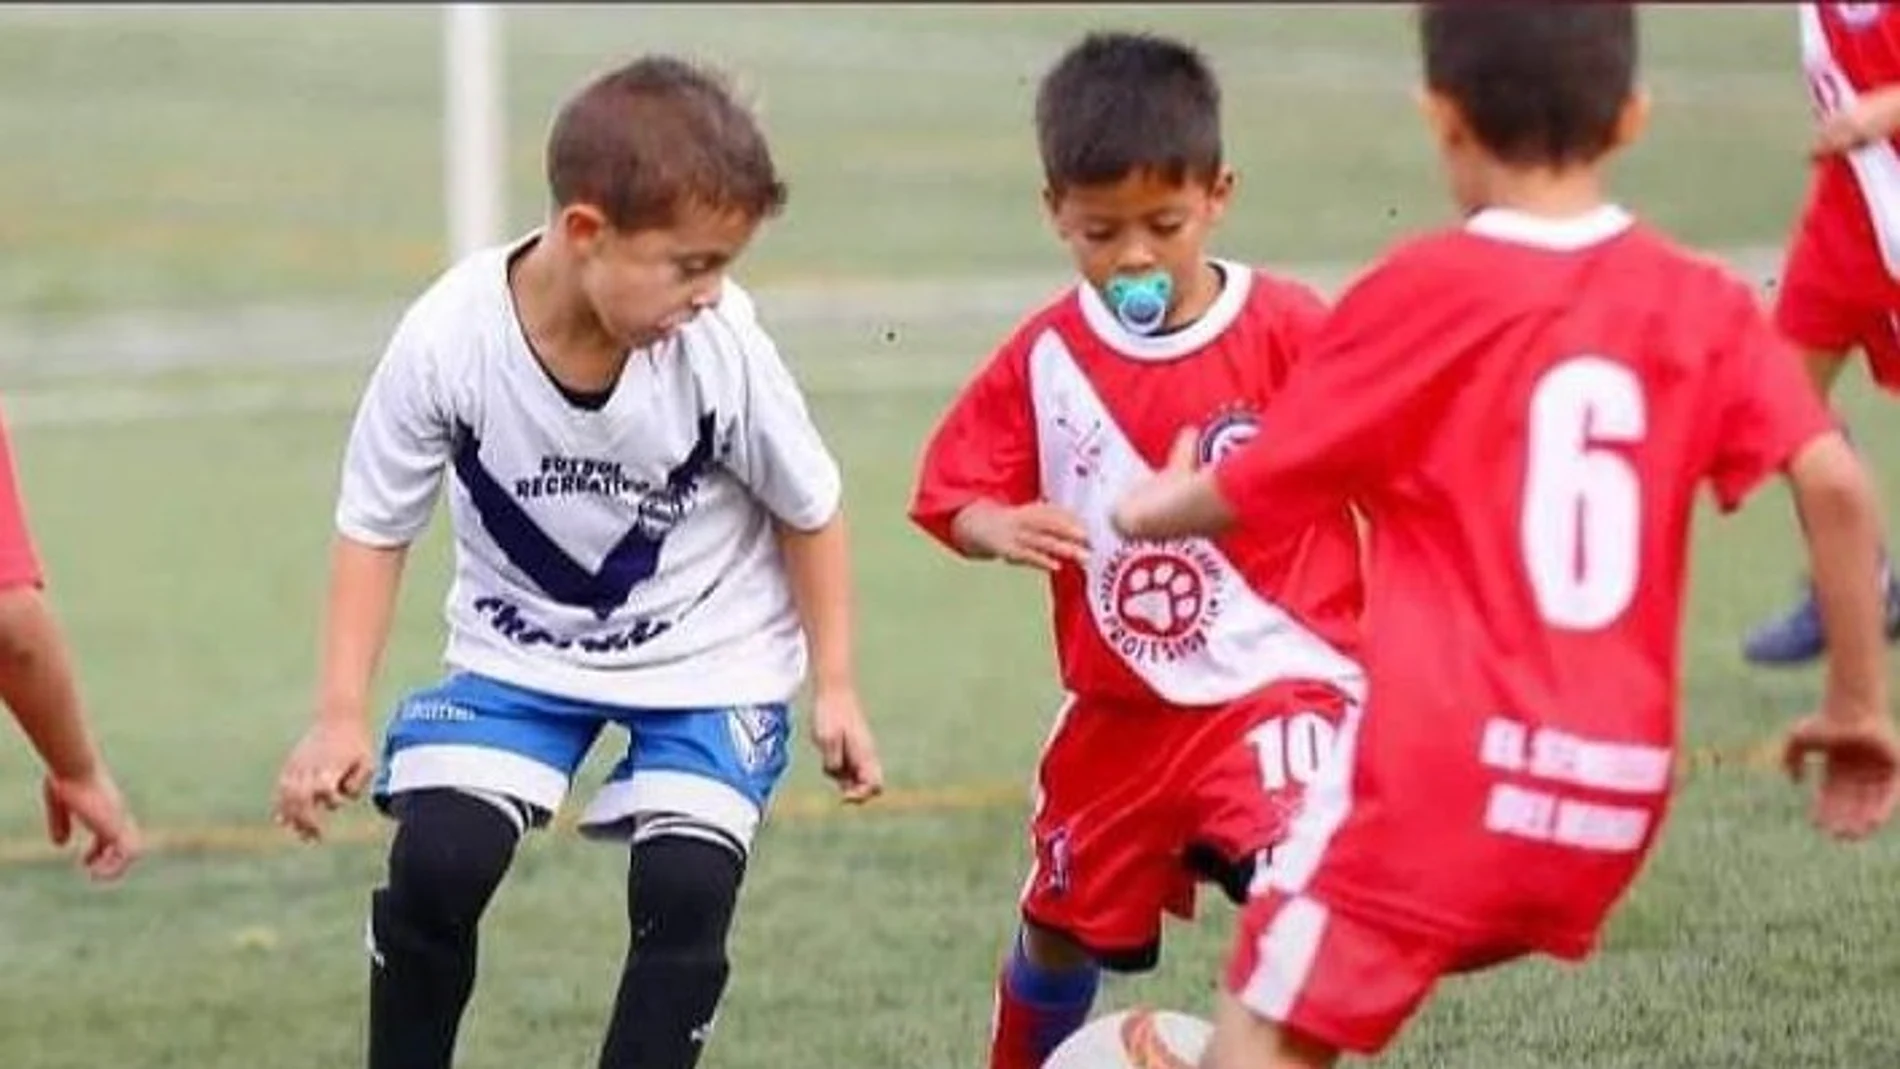 Ulises Cáceres, el niño de 6 años que se ha hecho viral por jugar al fútbol con chupete